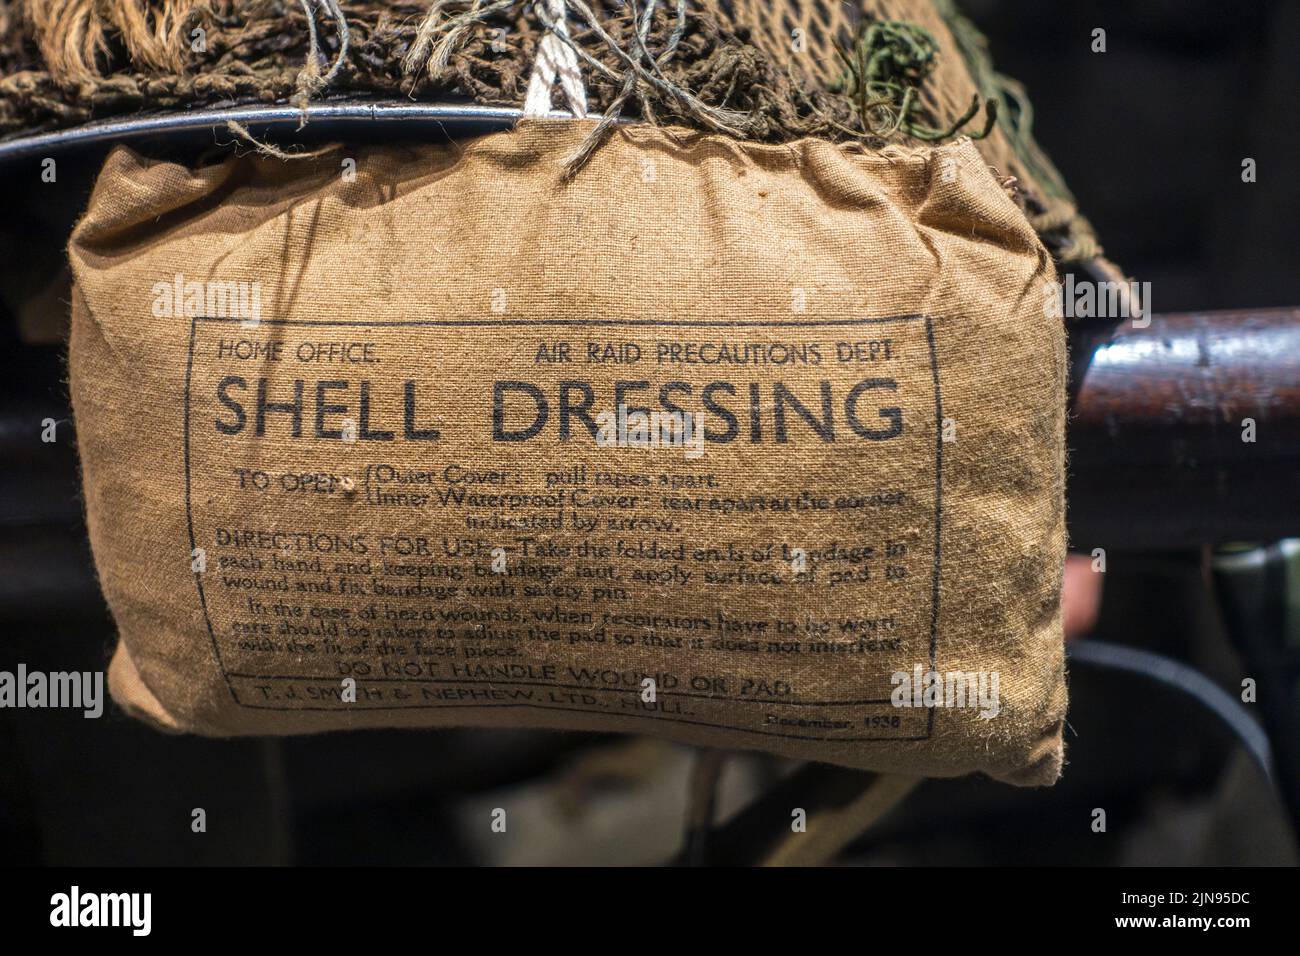 1938 Britische WW2 Smith & Nephew Bandage namens Shell Dressing von der Air RAID Prescautions Department des Innenministeriums, die während des Zweiten Weltkriegs verwendet wurde Stockfoto